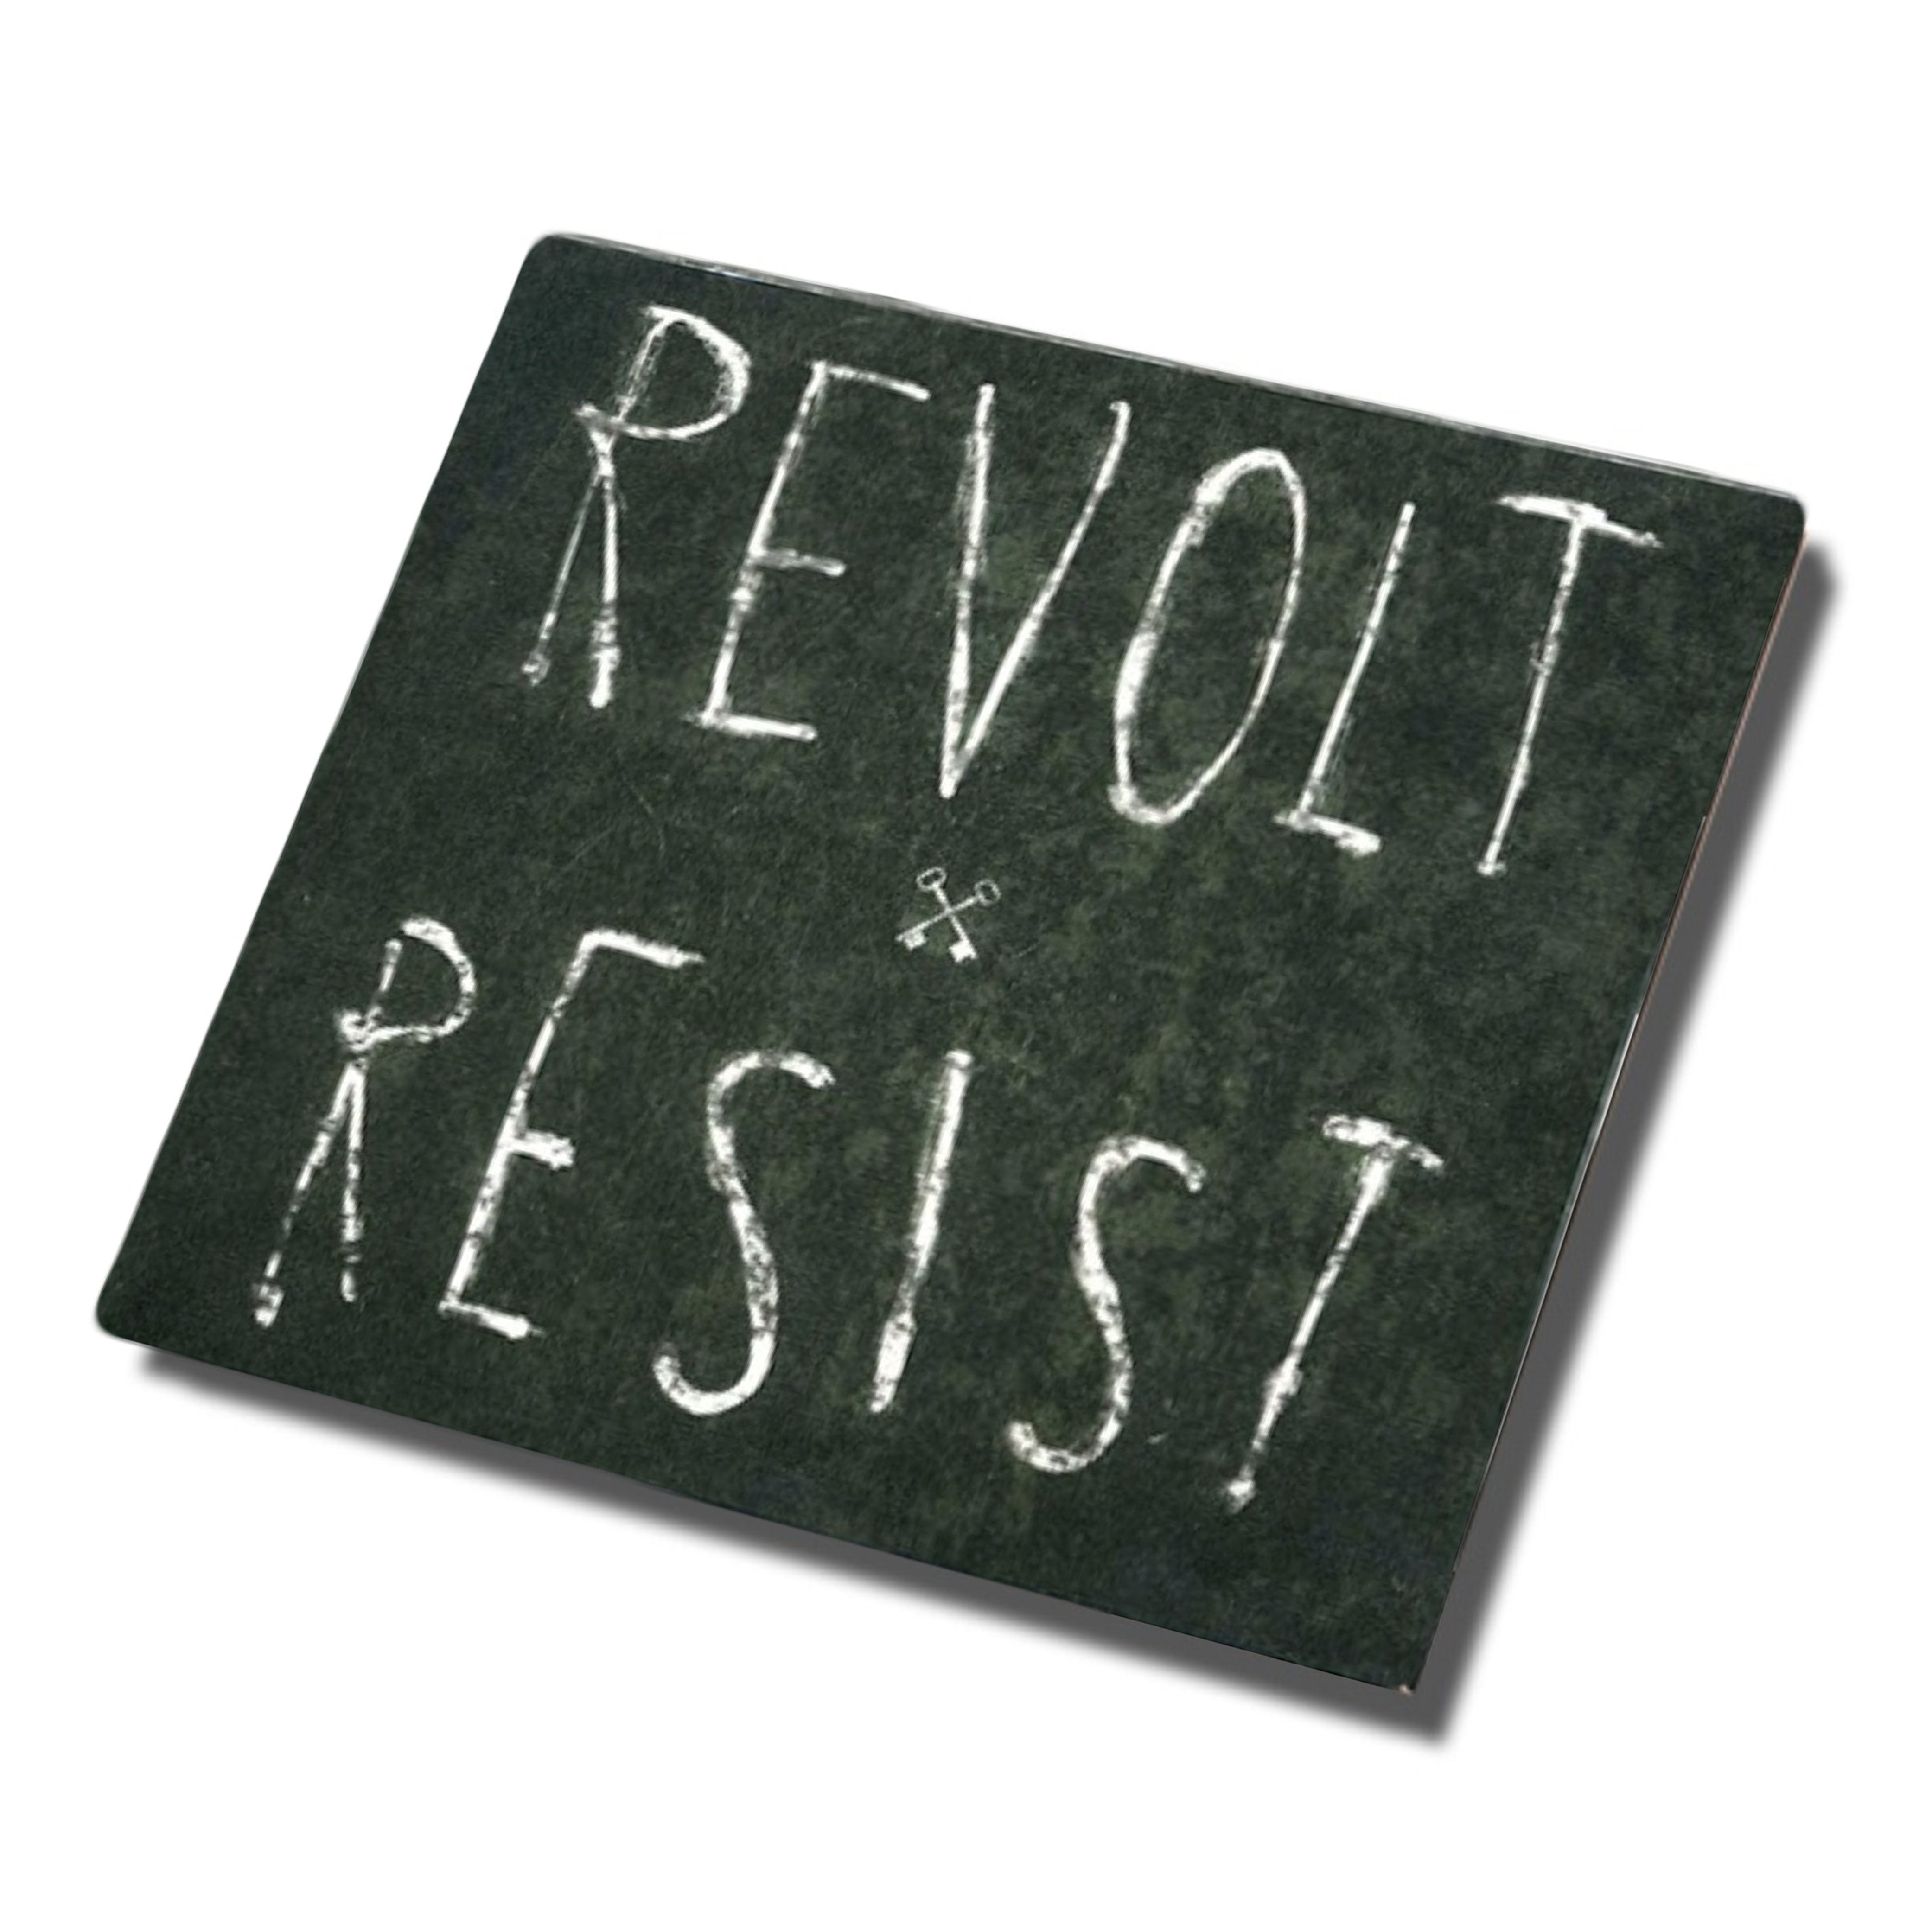 Revolt/Resist CD